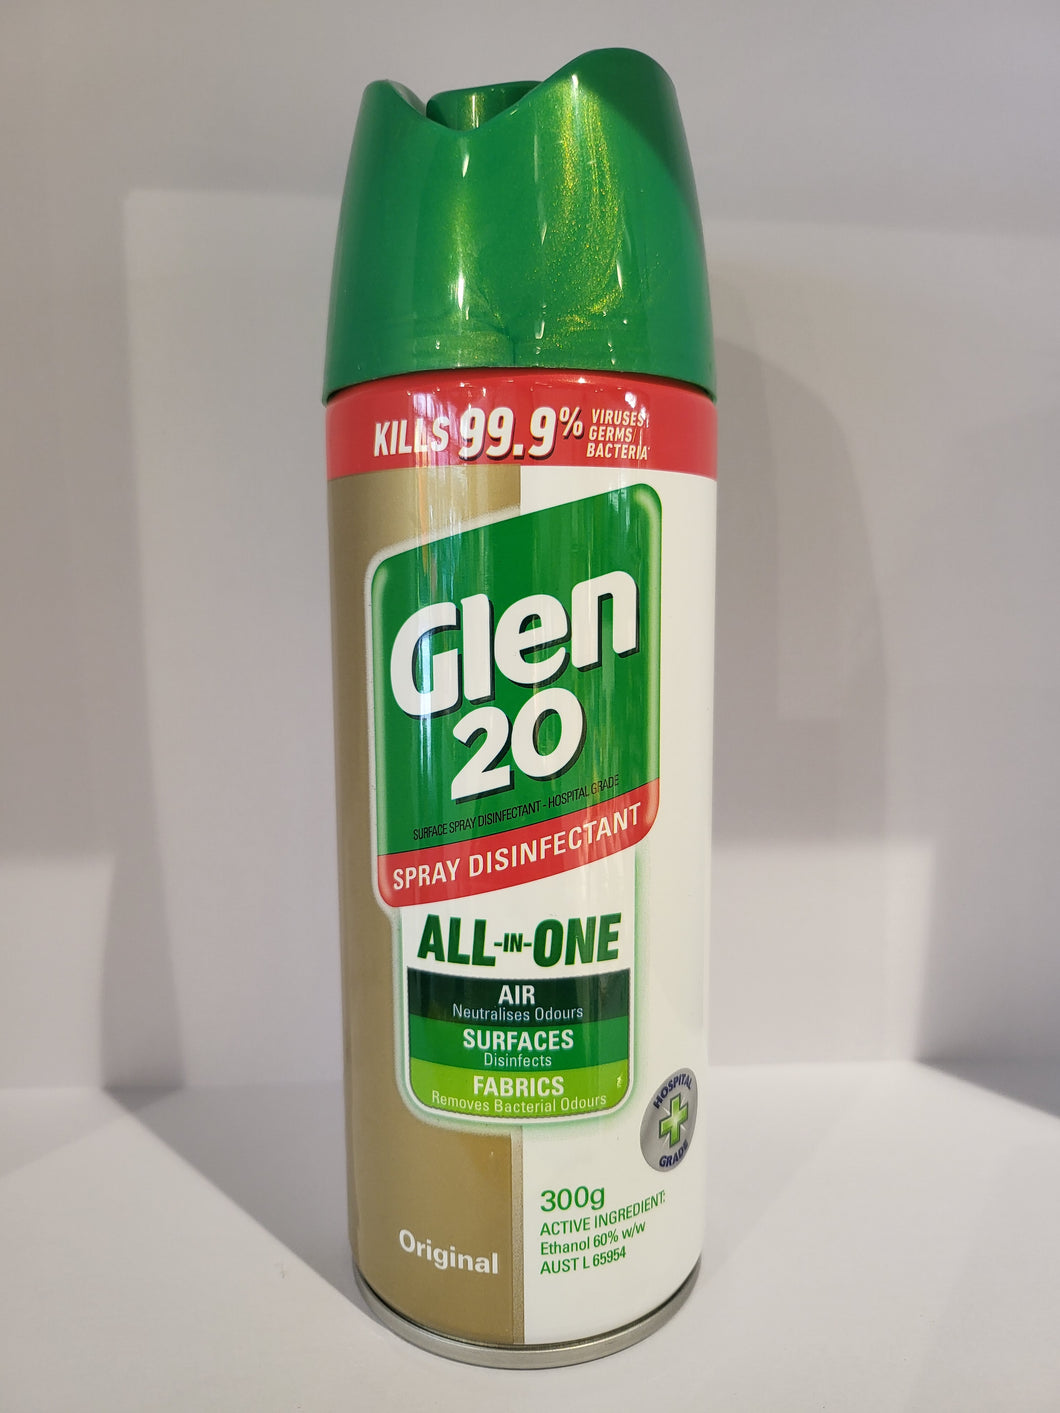 GLEN 20 Disinfectant Spray